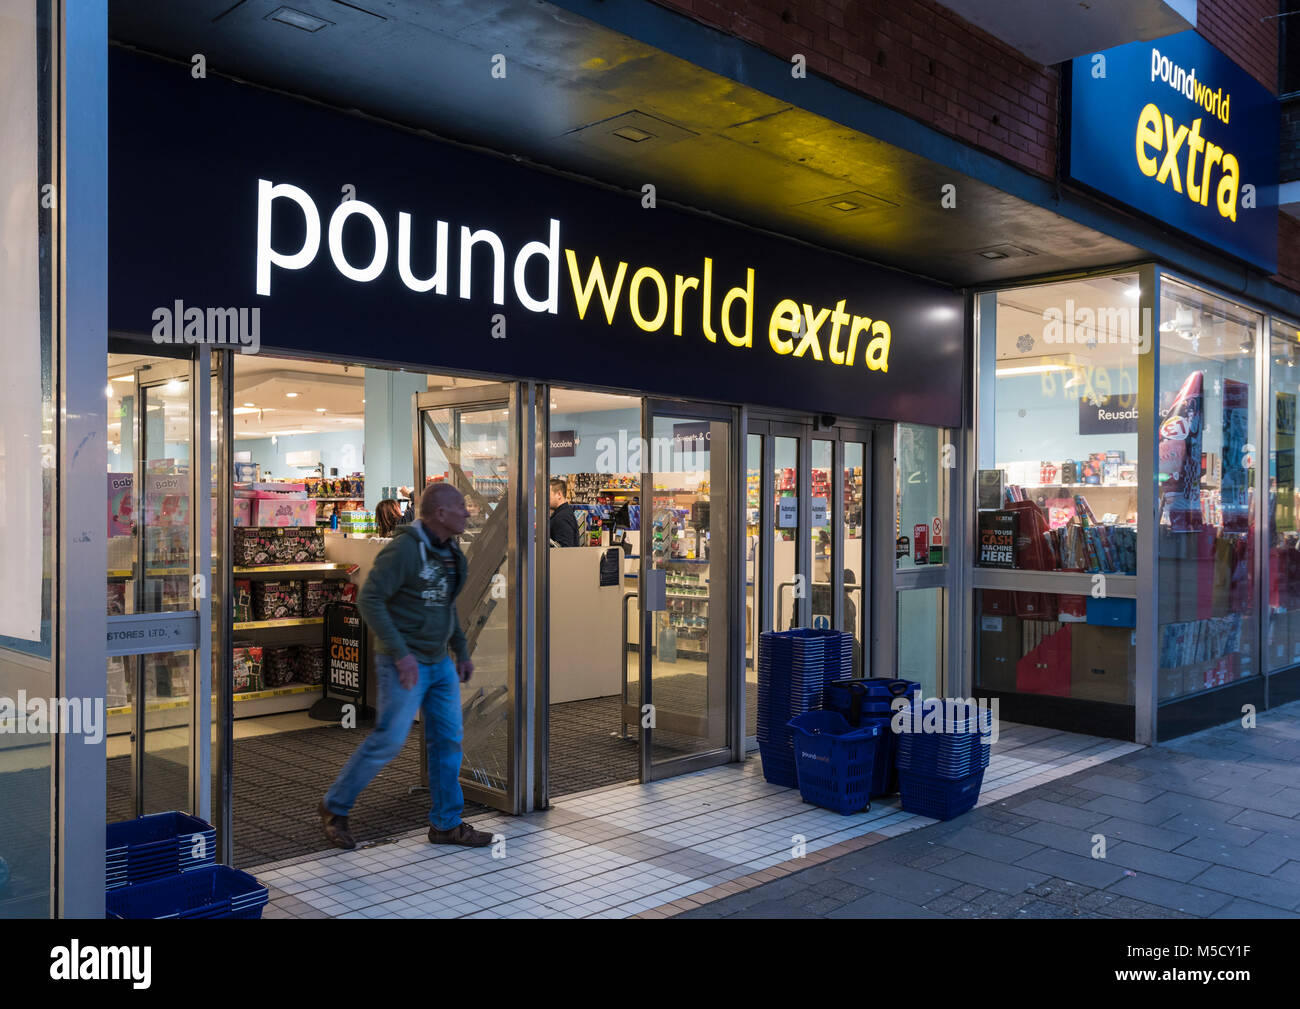 Pound World Extra retail store in England, UK. Poundworld shop UK. Stock Photo